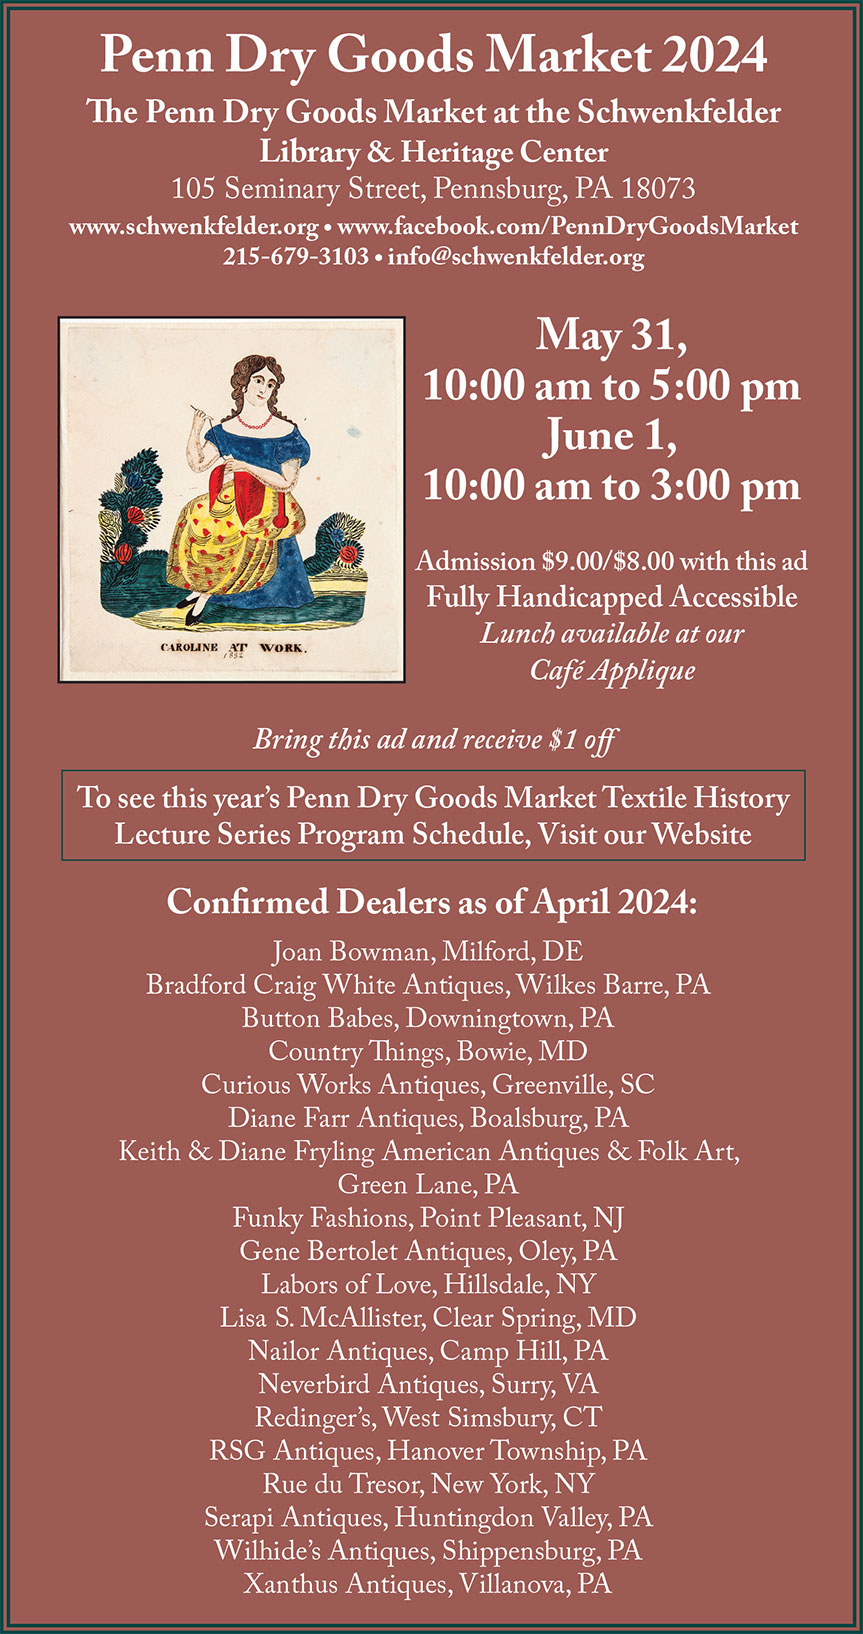 Penn Dry Goods Market: May 31-June 1